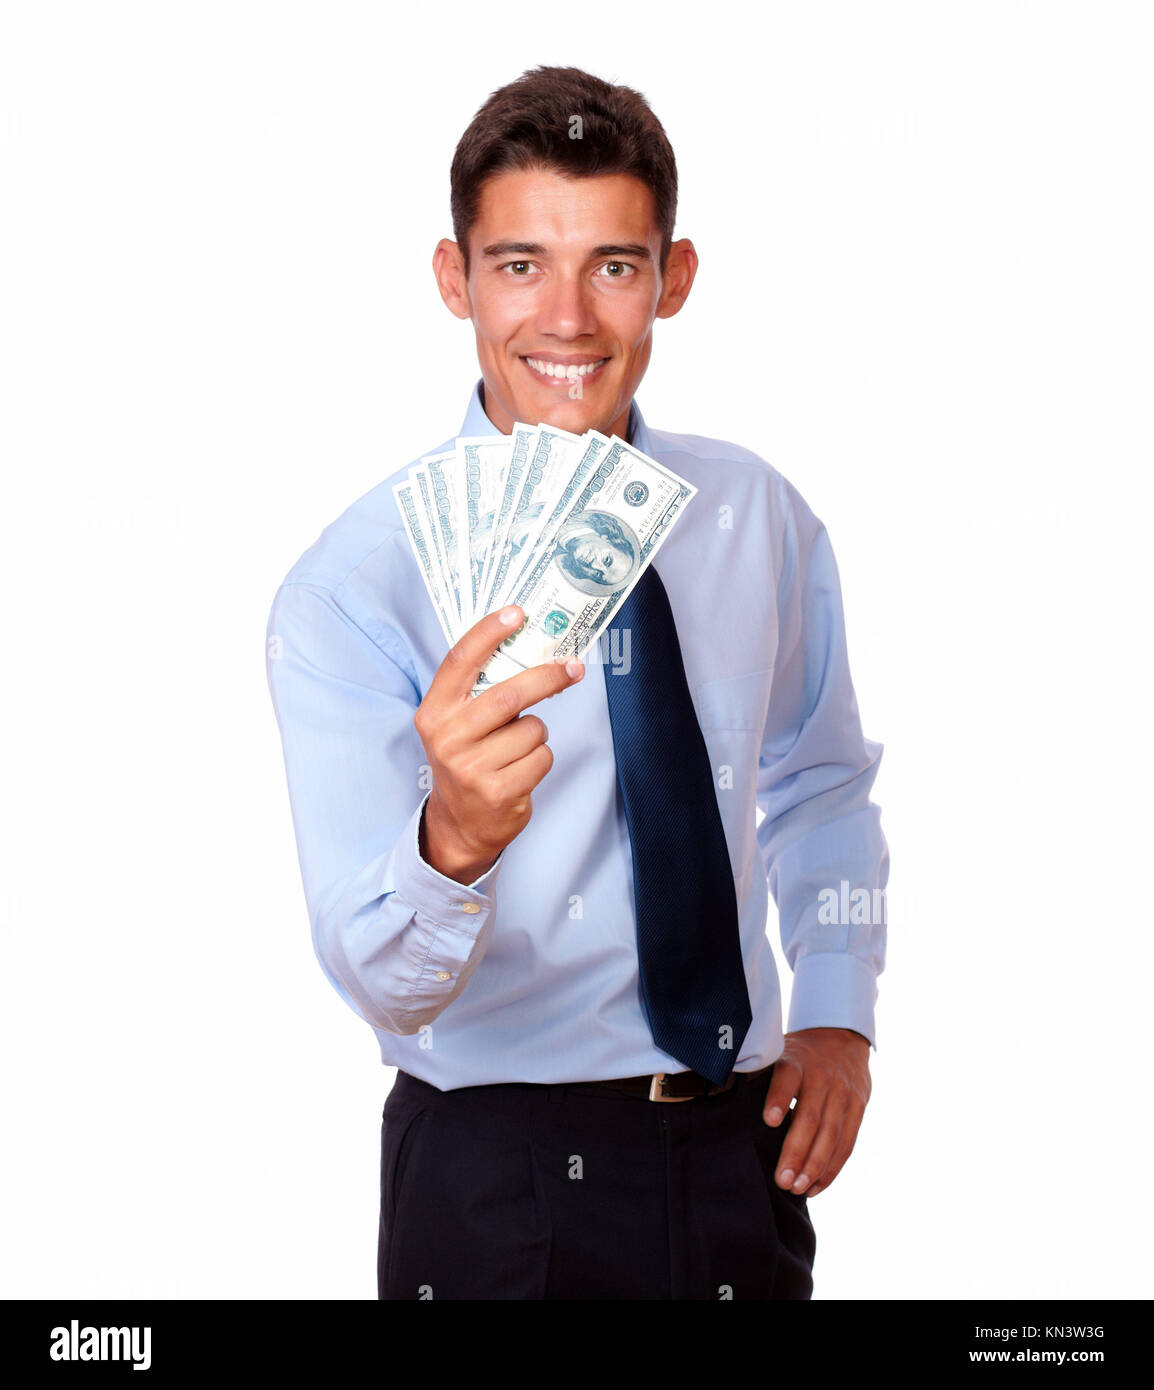 Retrato de un joven en empate mantener efectivo dólares sobre fondo blanco. Foto de stock